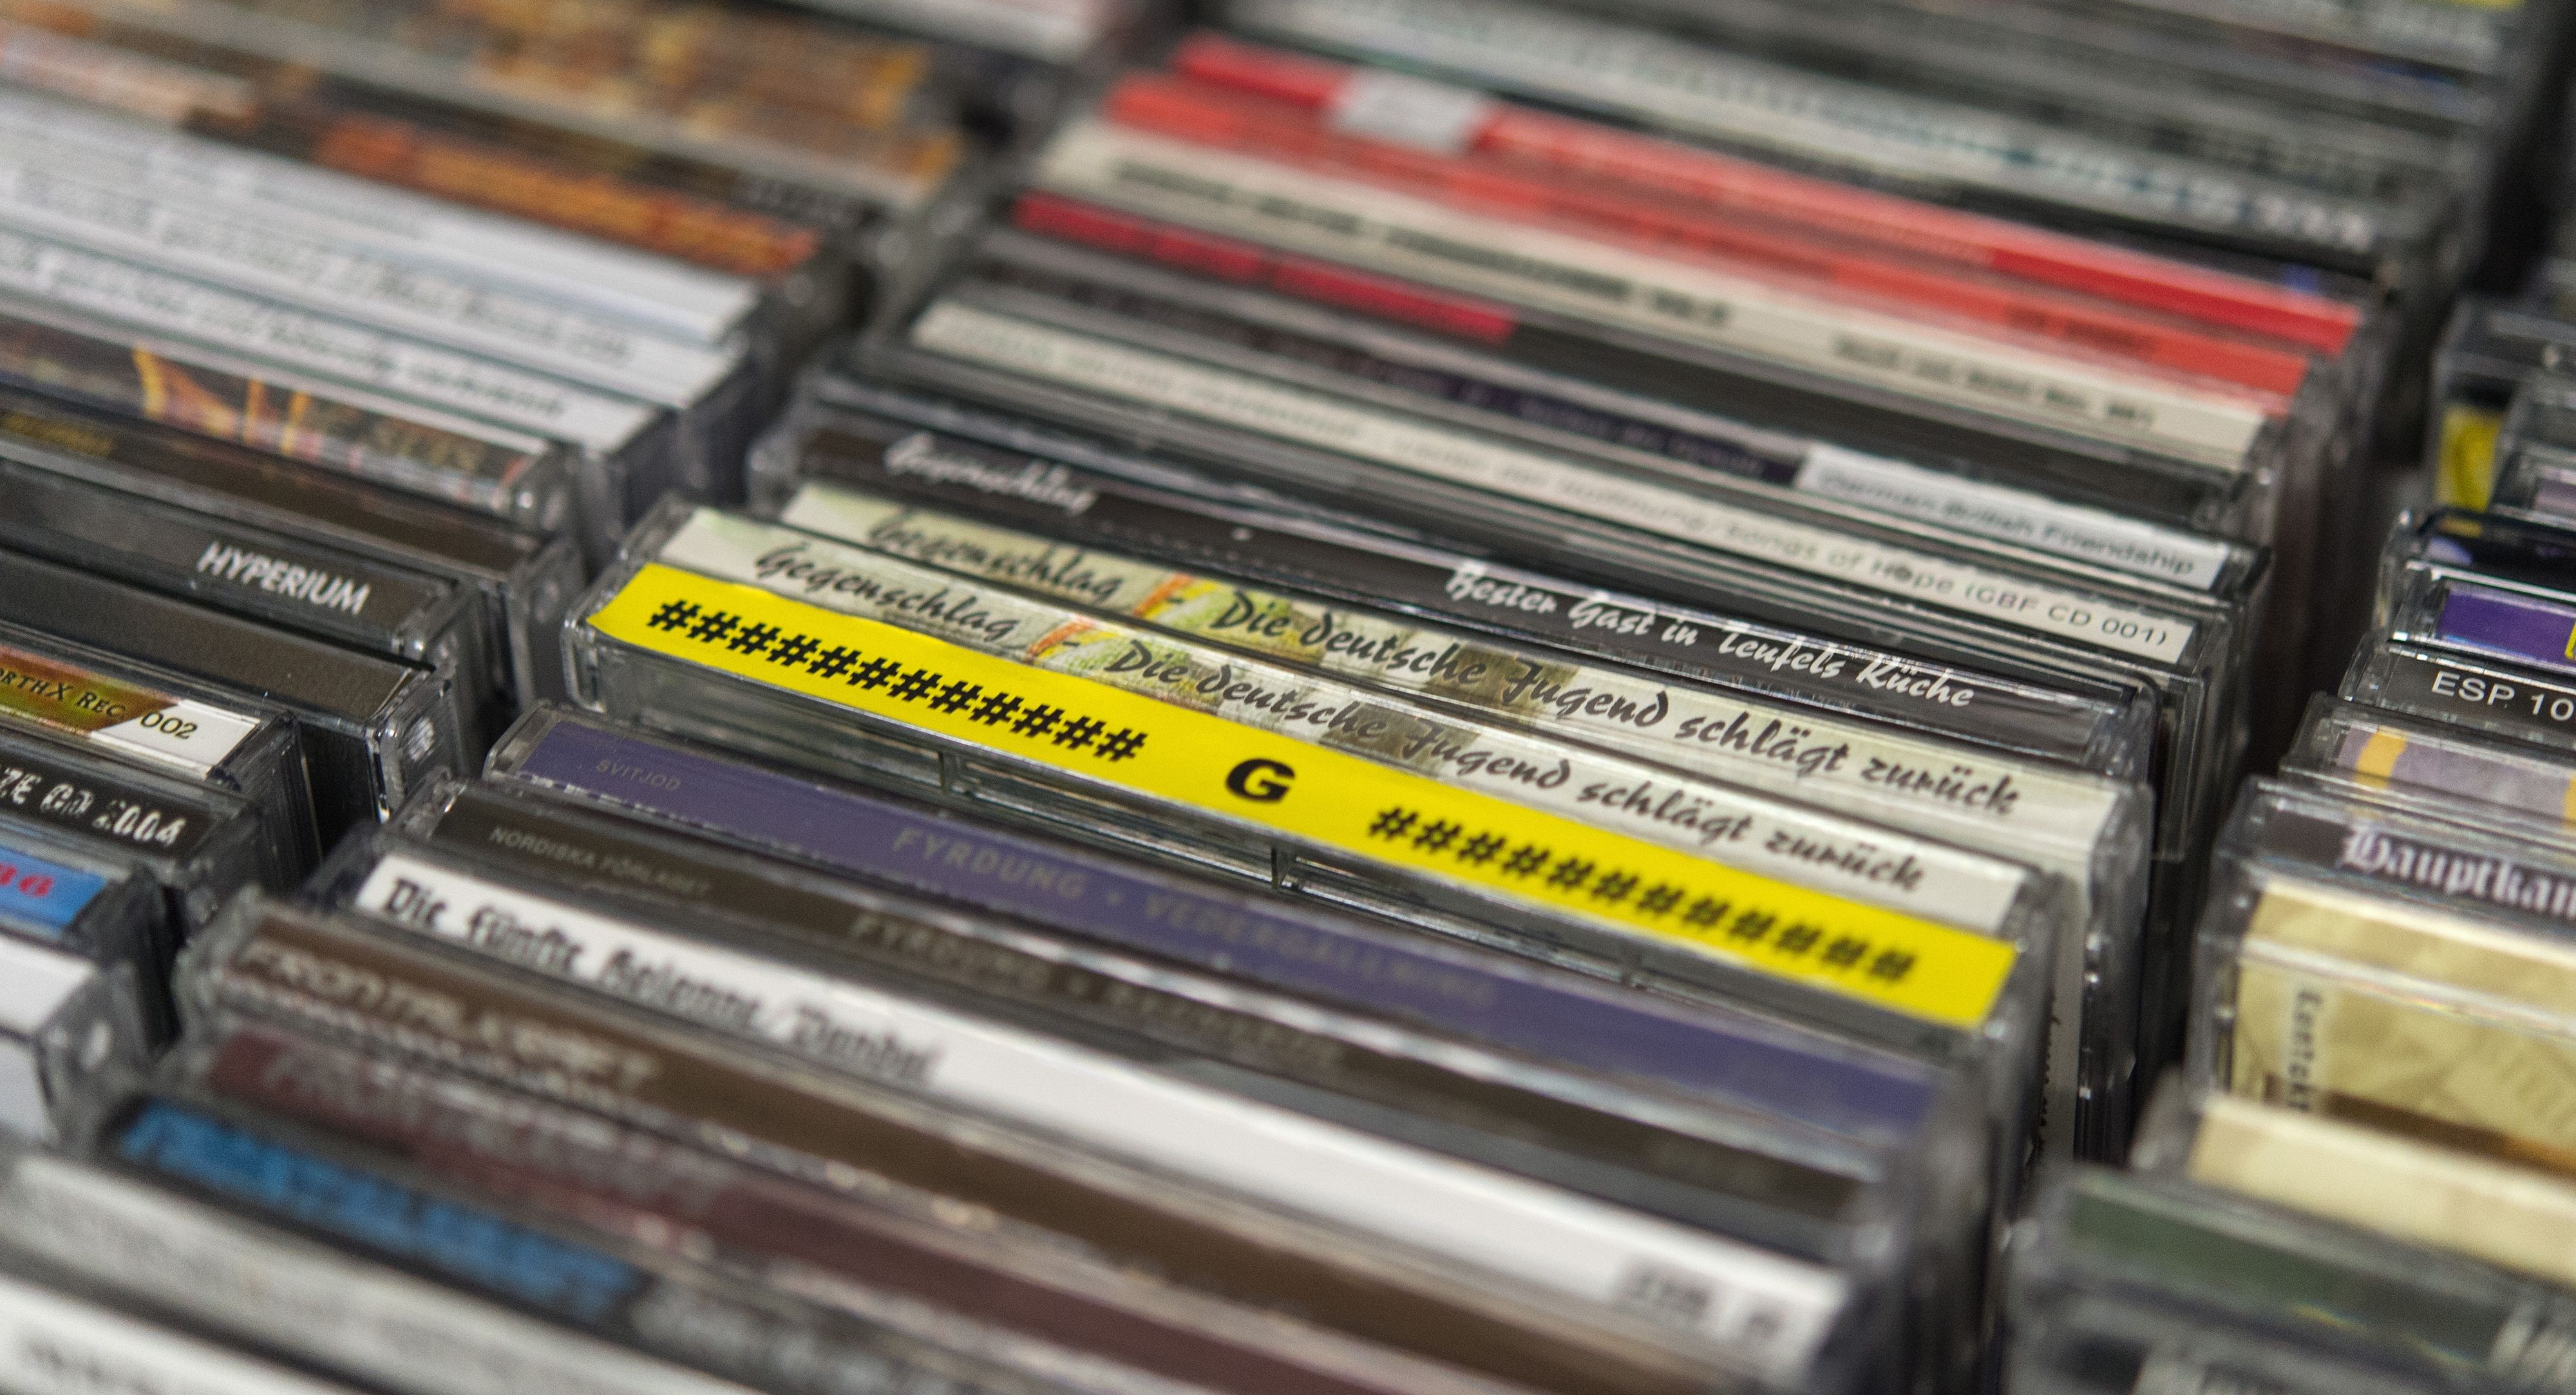 Rechtsrock-CDs liegen in einer Schublade. Symbolfoto: dpa